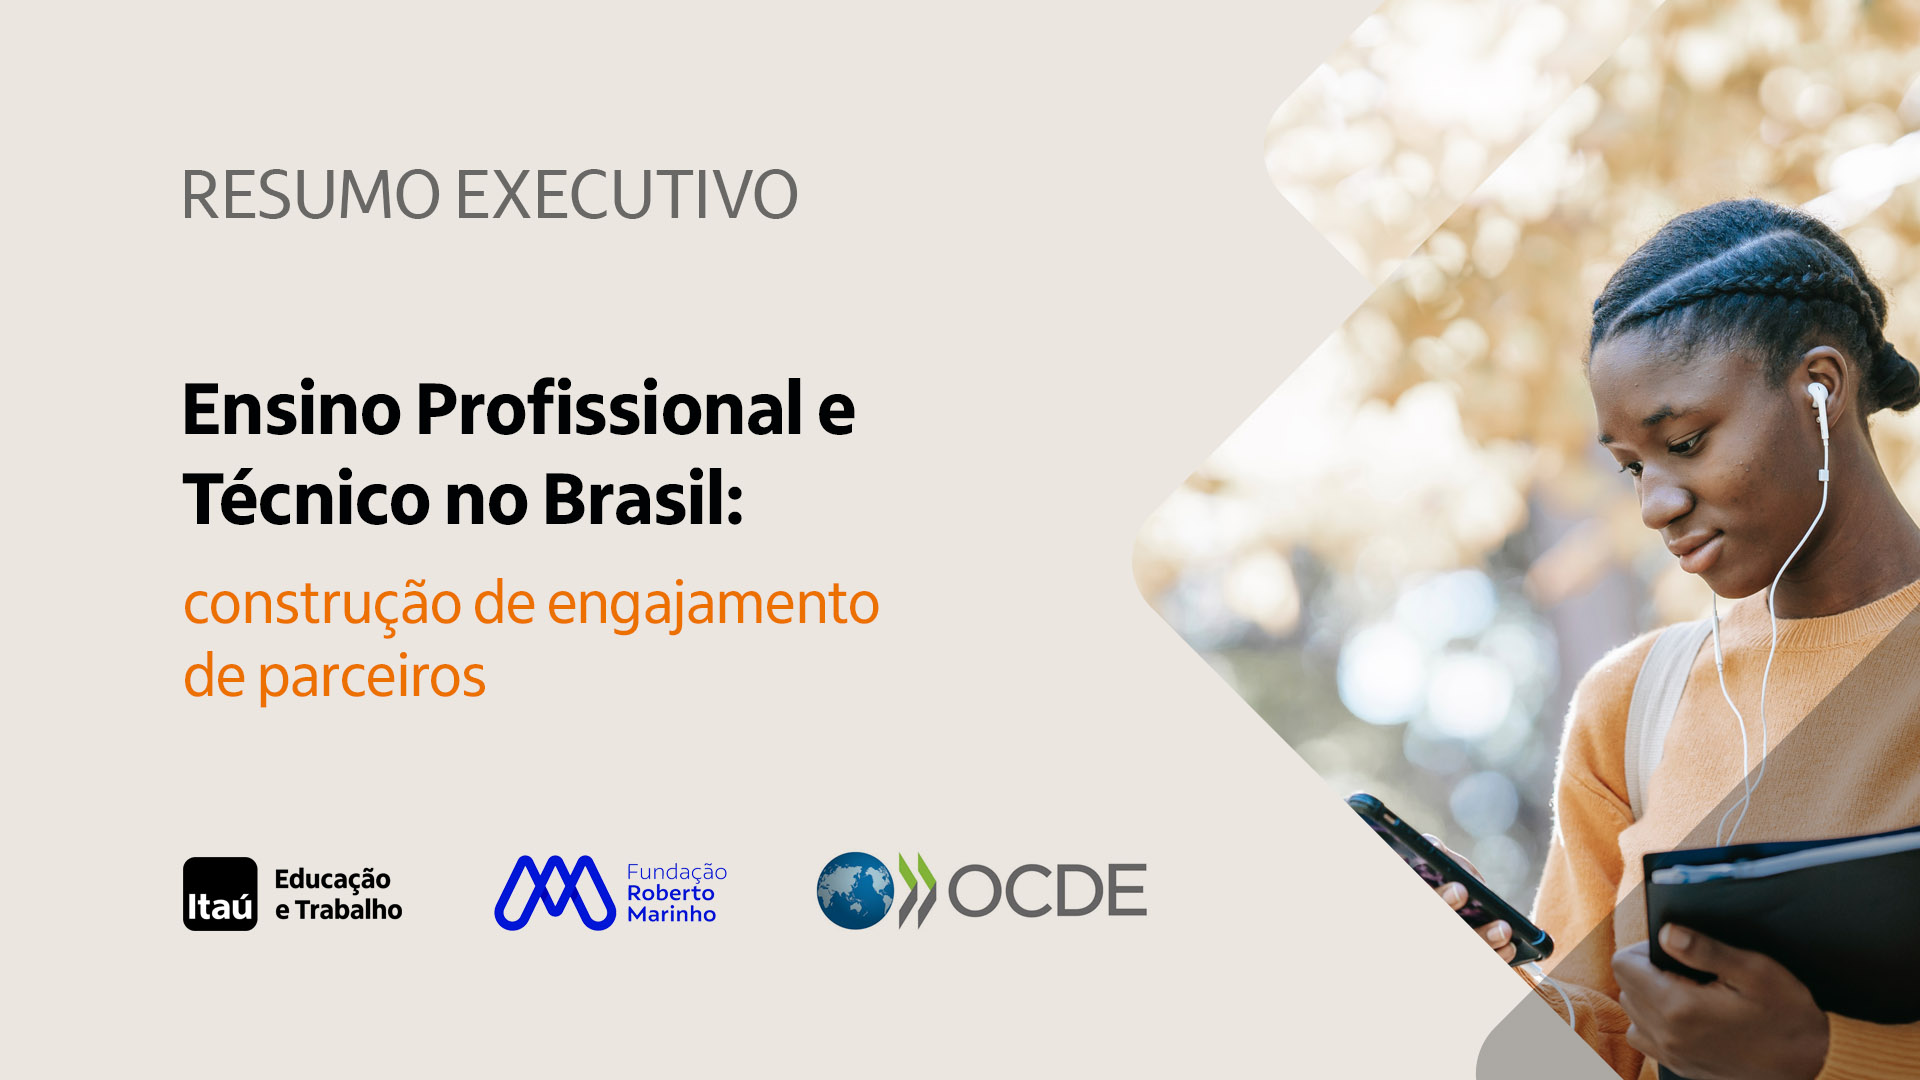 Ensino Profissional e Técnico no Brasil: construção de engajamento de parceiros sociais